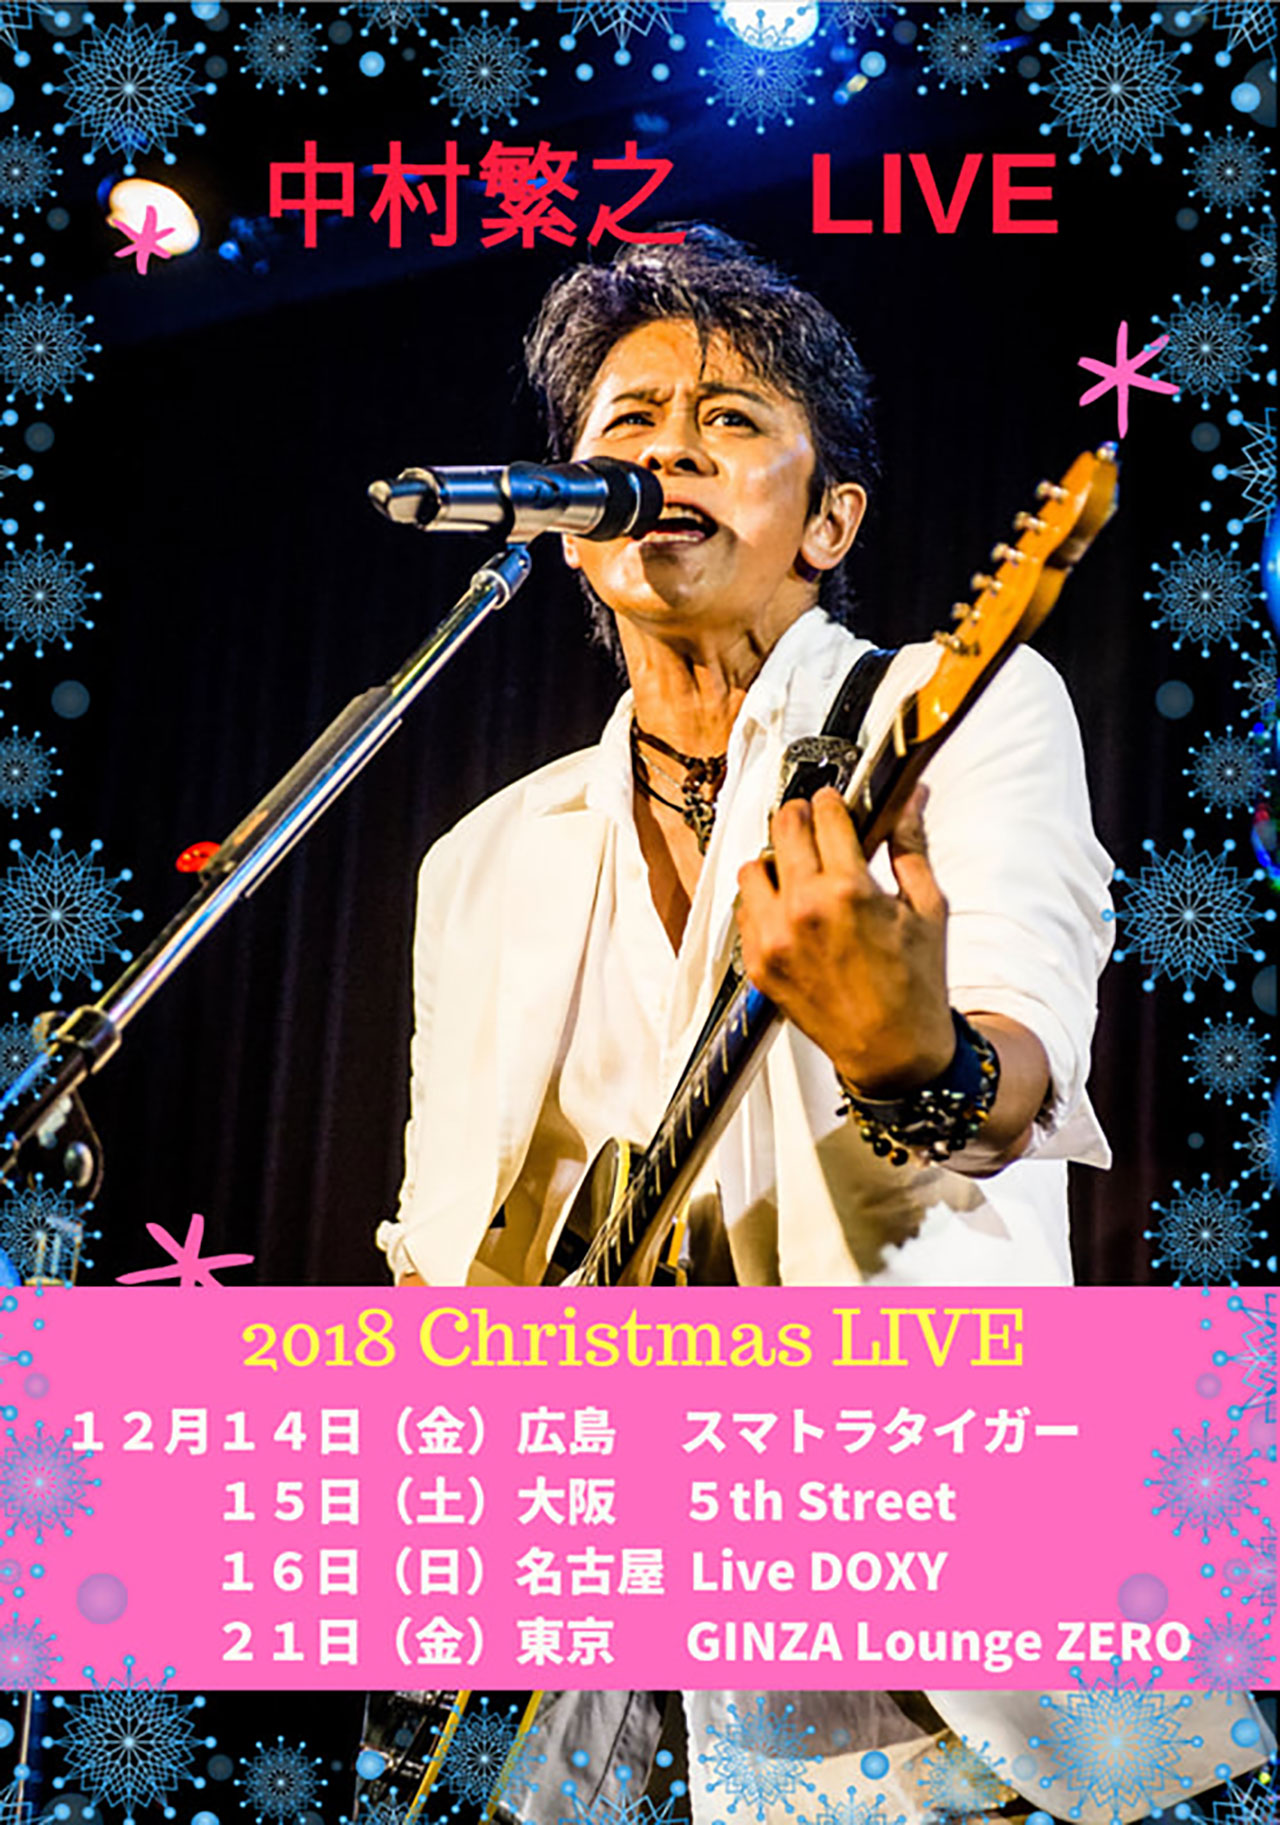 ありがとうございました♪「2018 Christmas LIVE」（広島・大阪・名古屋・東京）